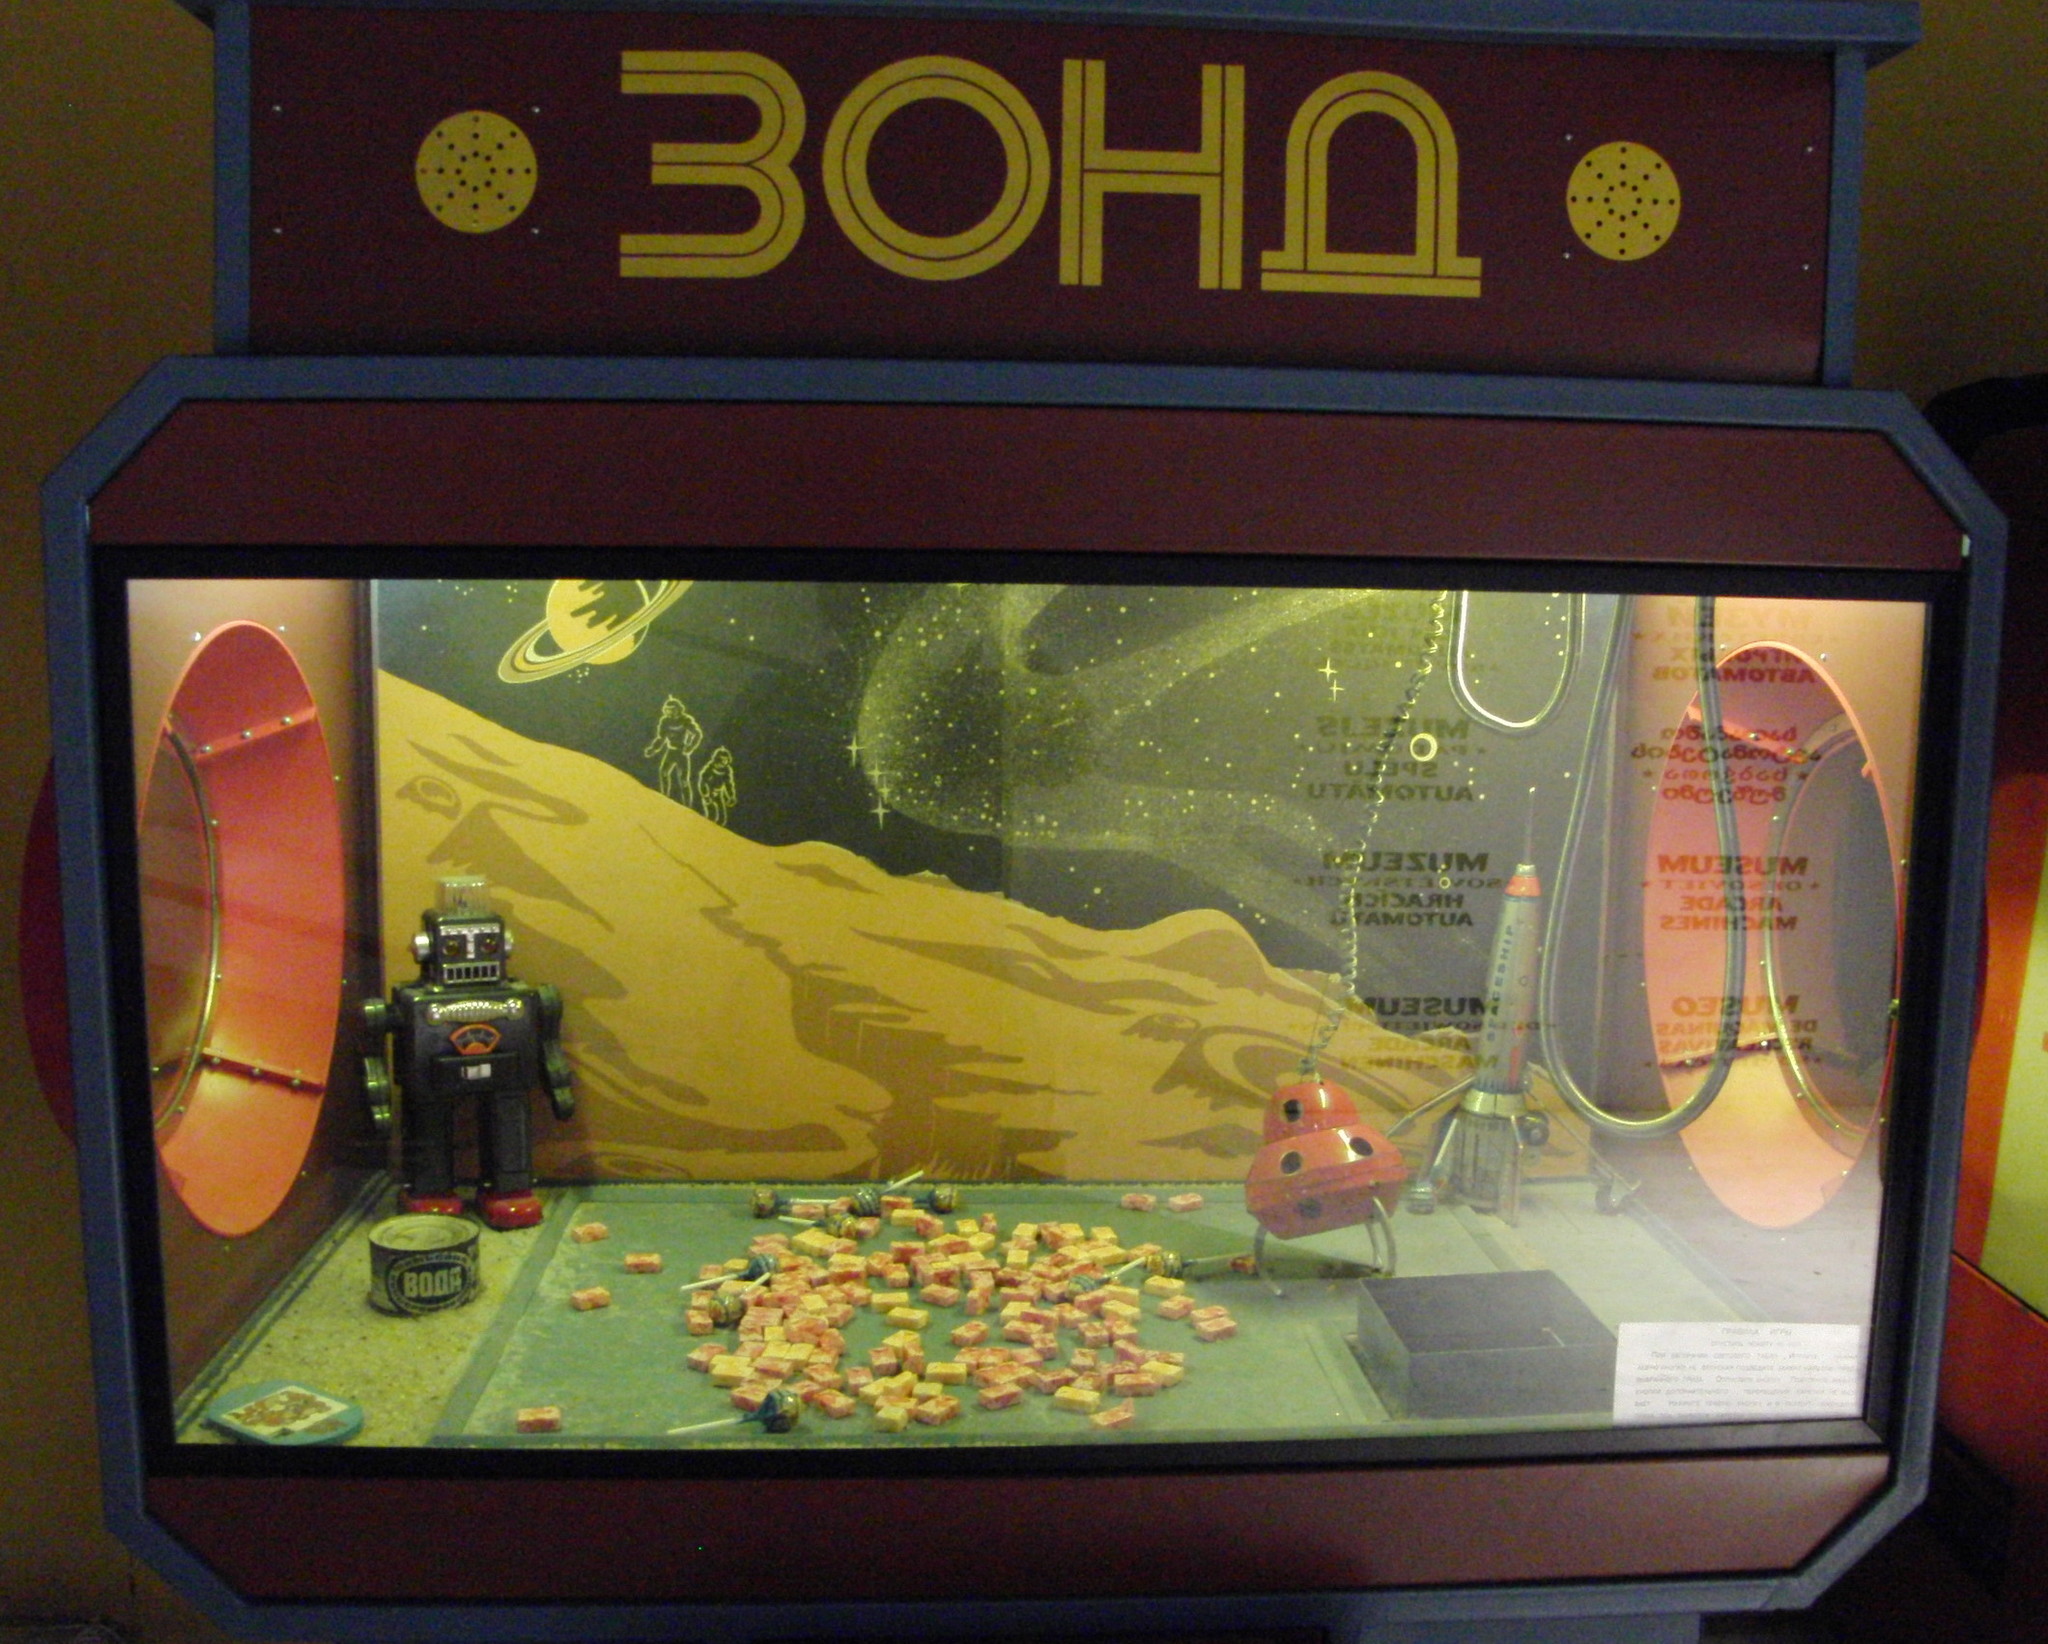 советские игровые автоматы онлайн